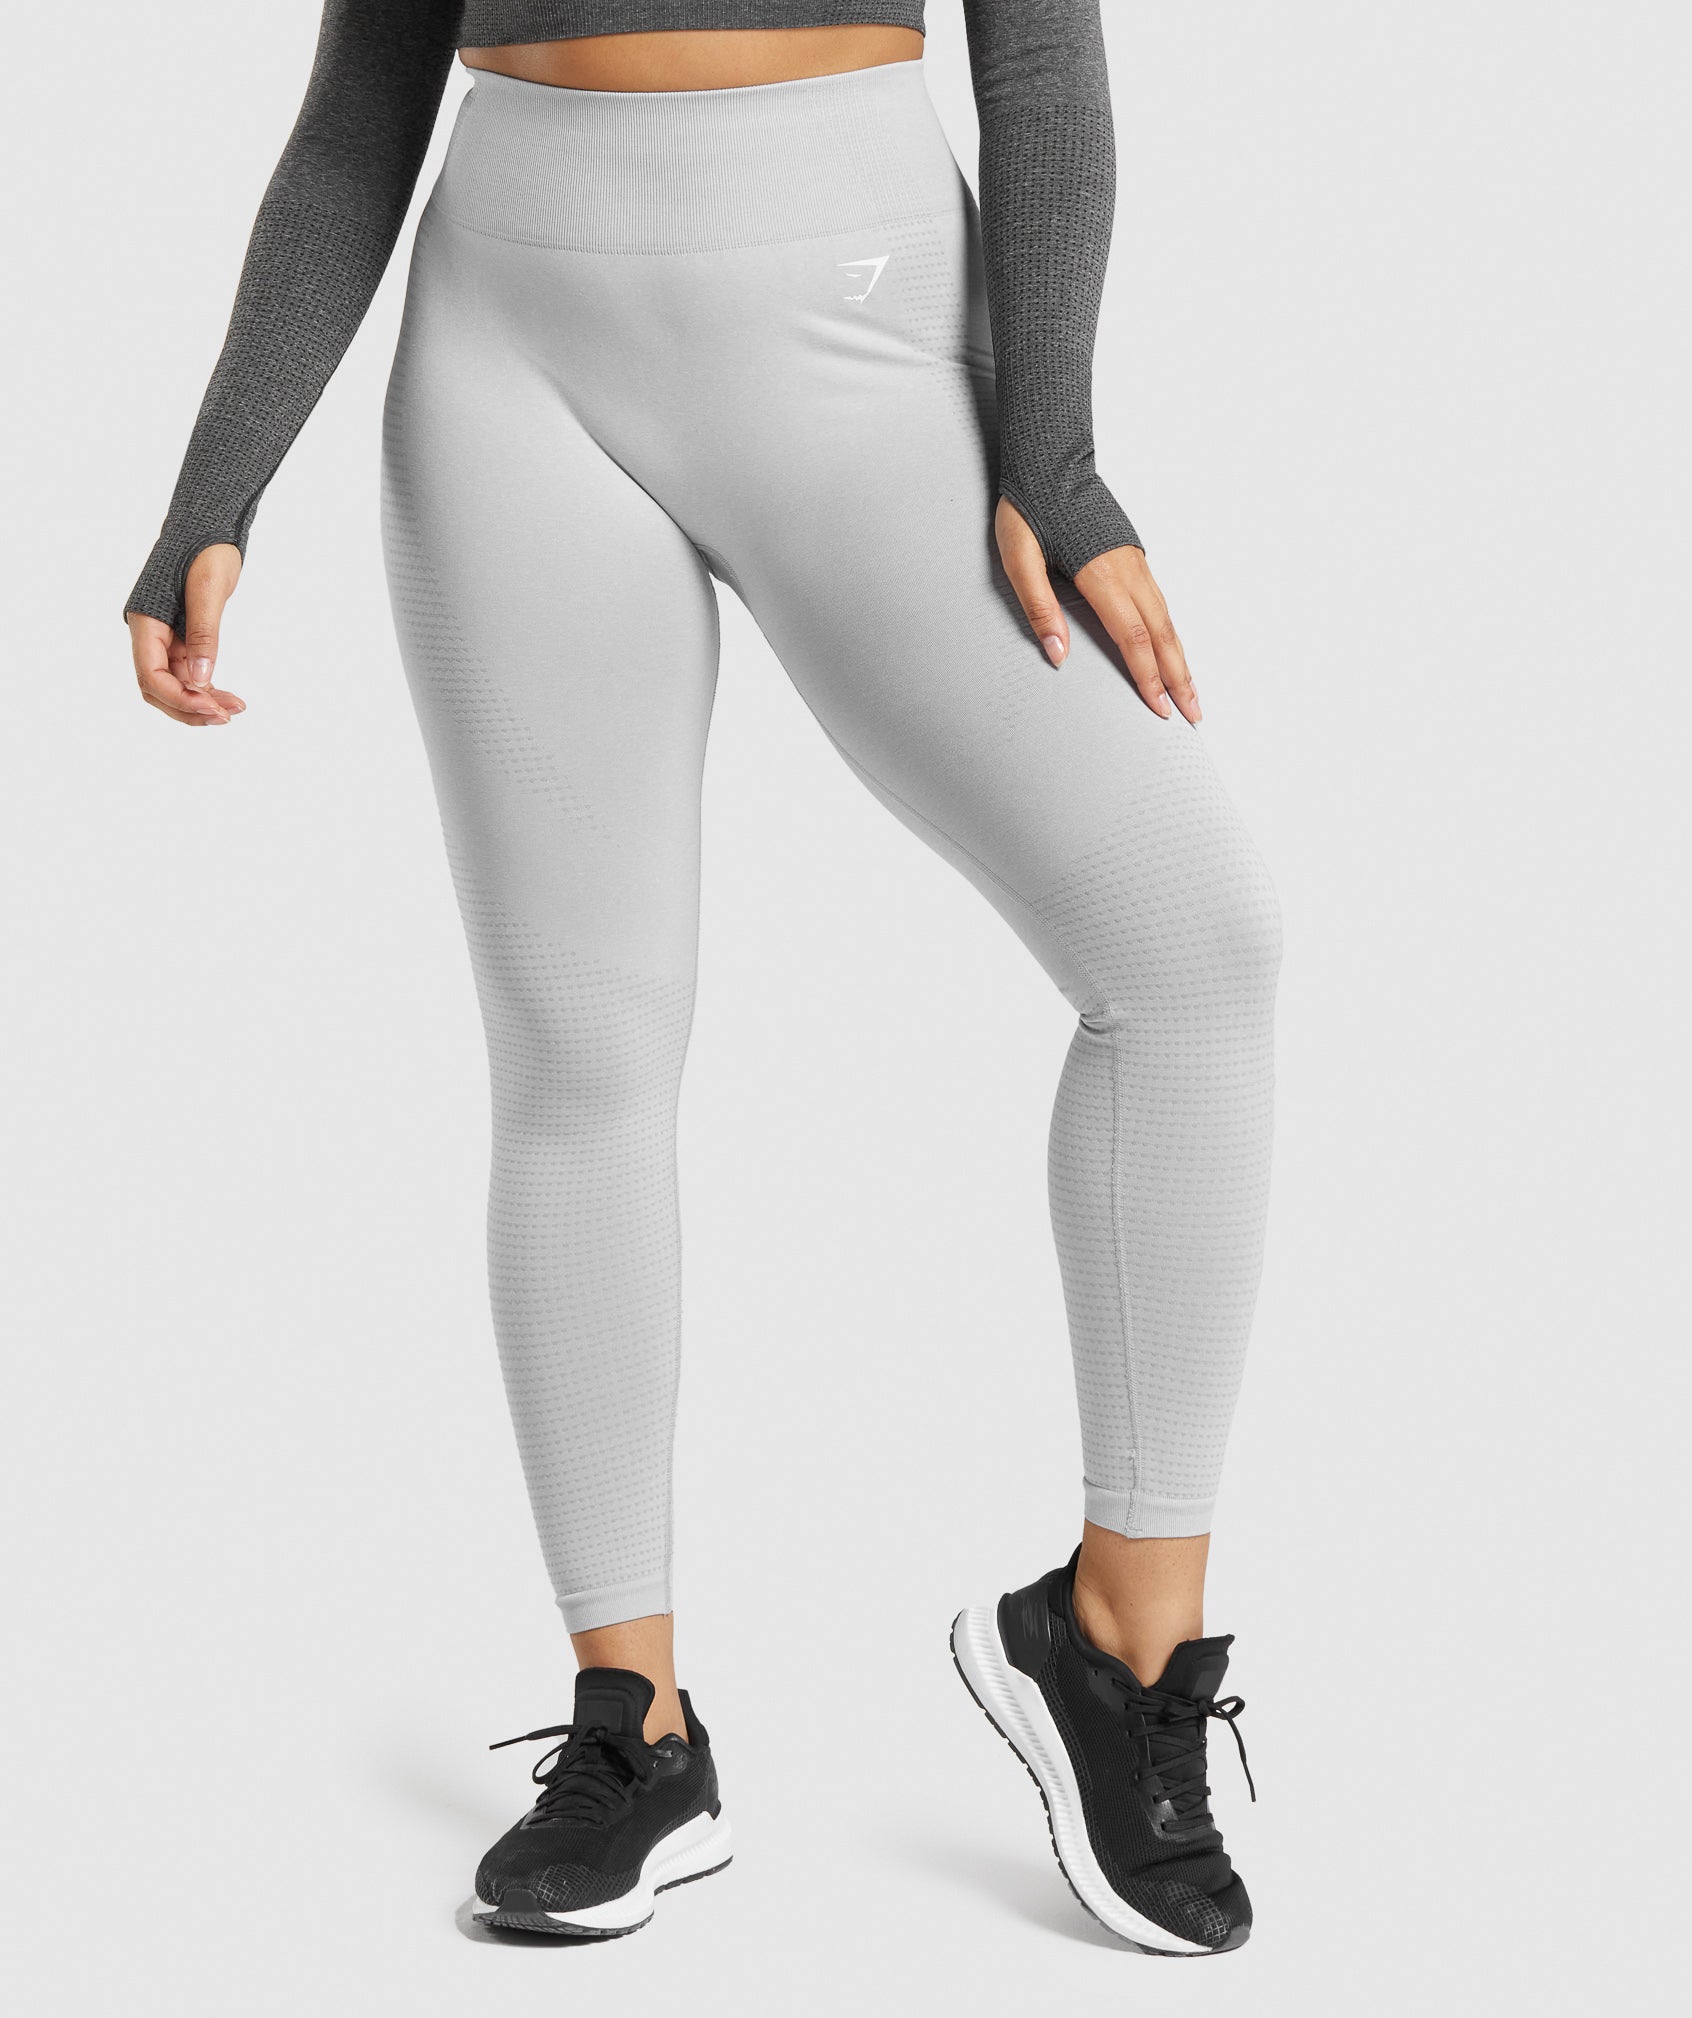 Gymshark vital seamless leggings grey marl Gray - $45 - From Flipped